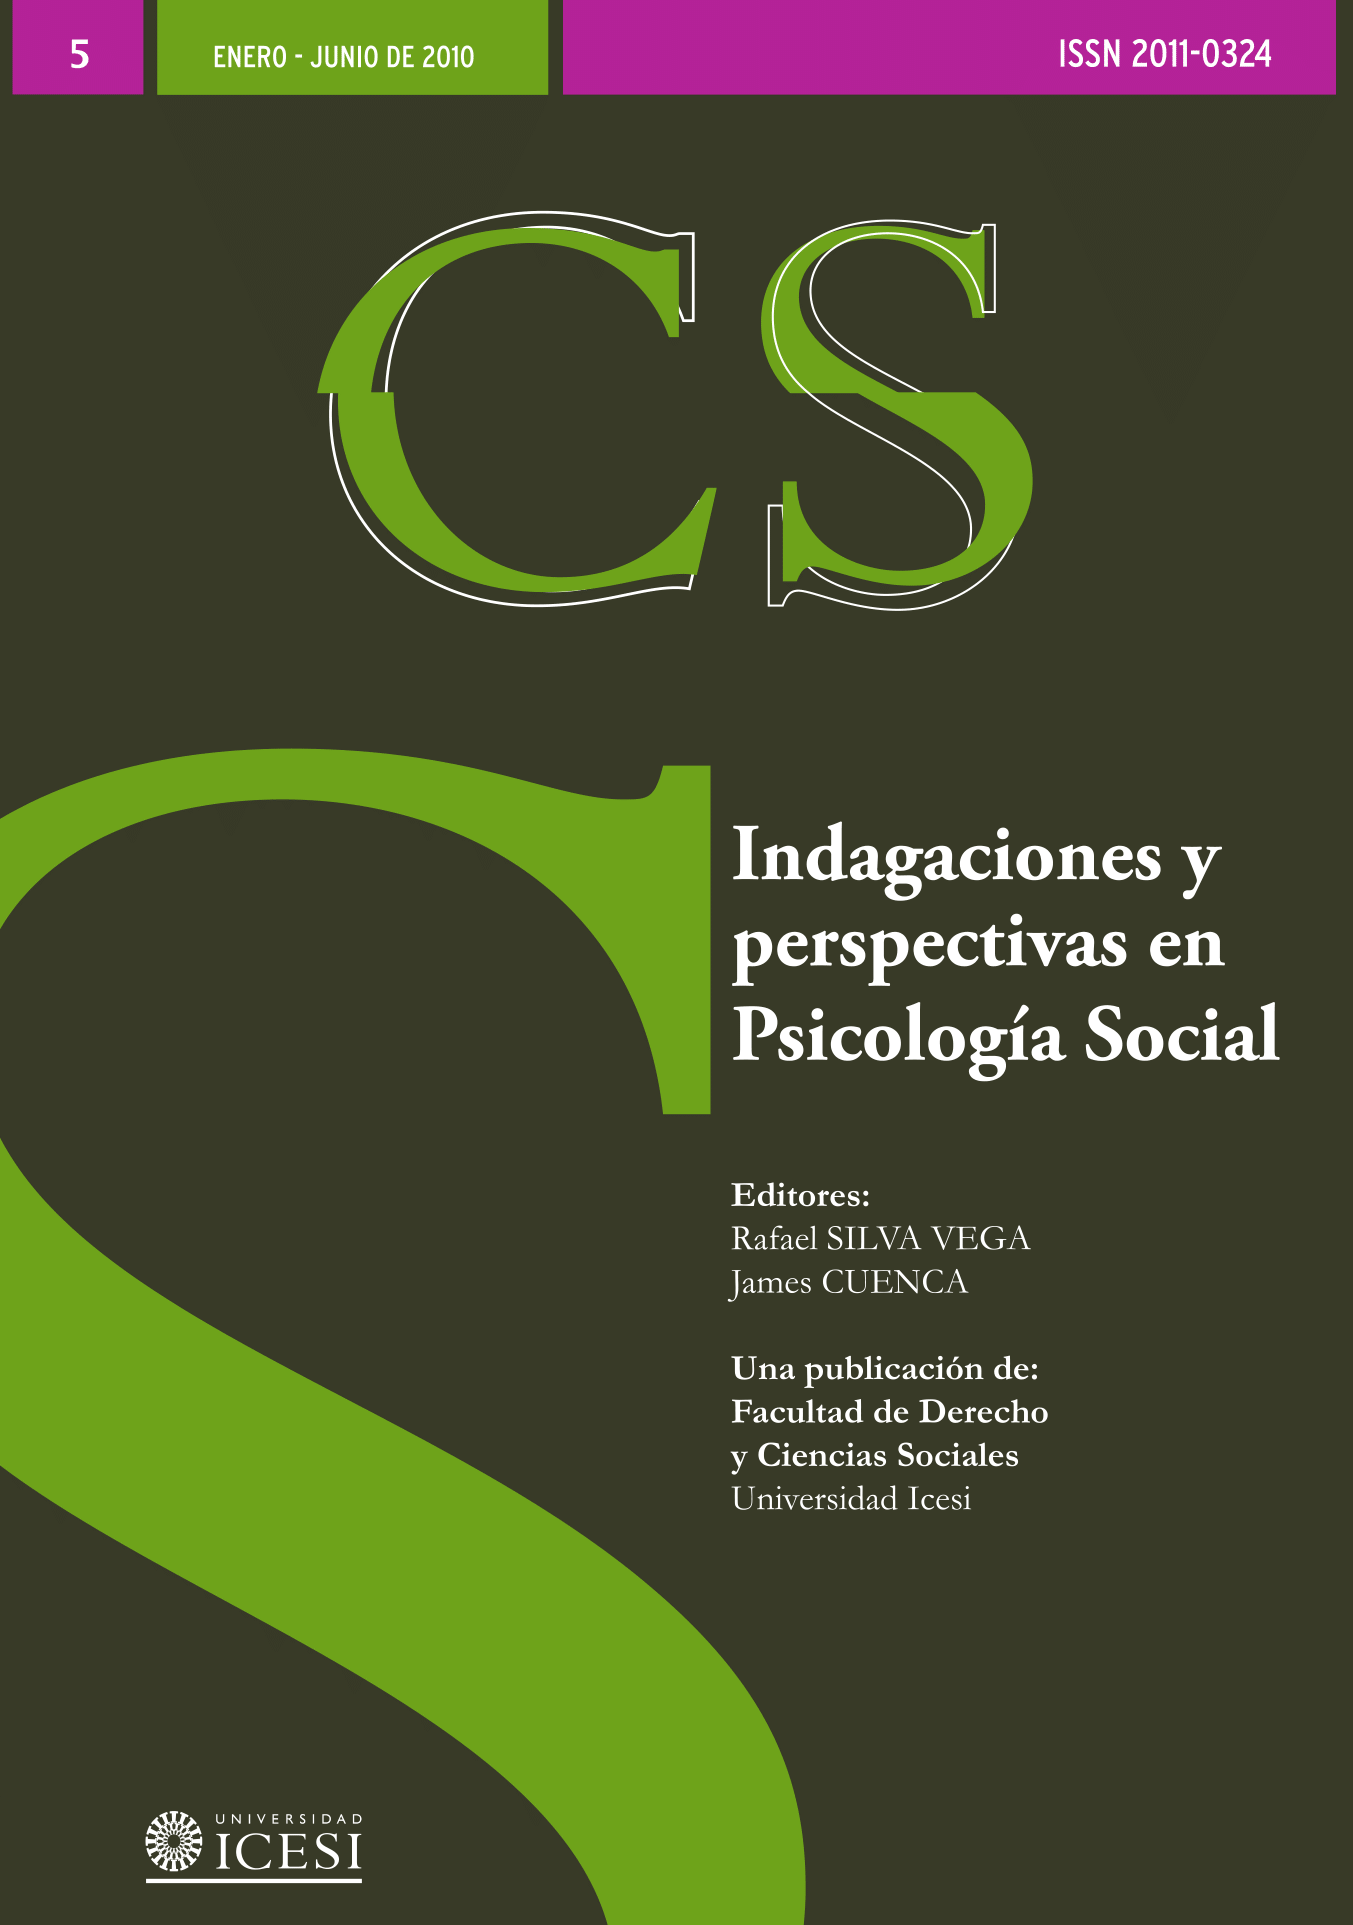 					View No. 5 (2010): No. 5, Enero-Junio (2010): Indagaciones y perspectivas en Psicología Social
				